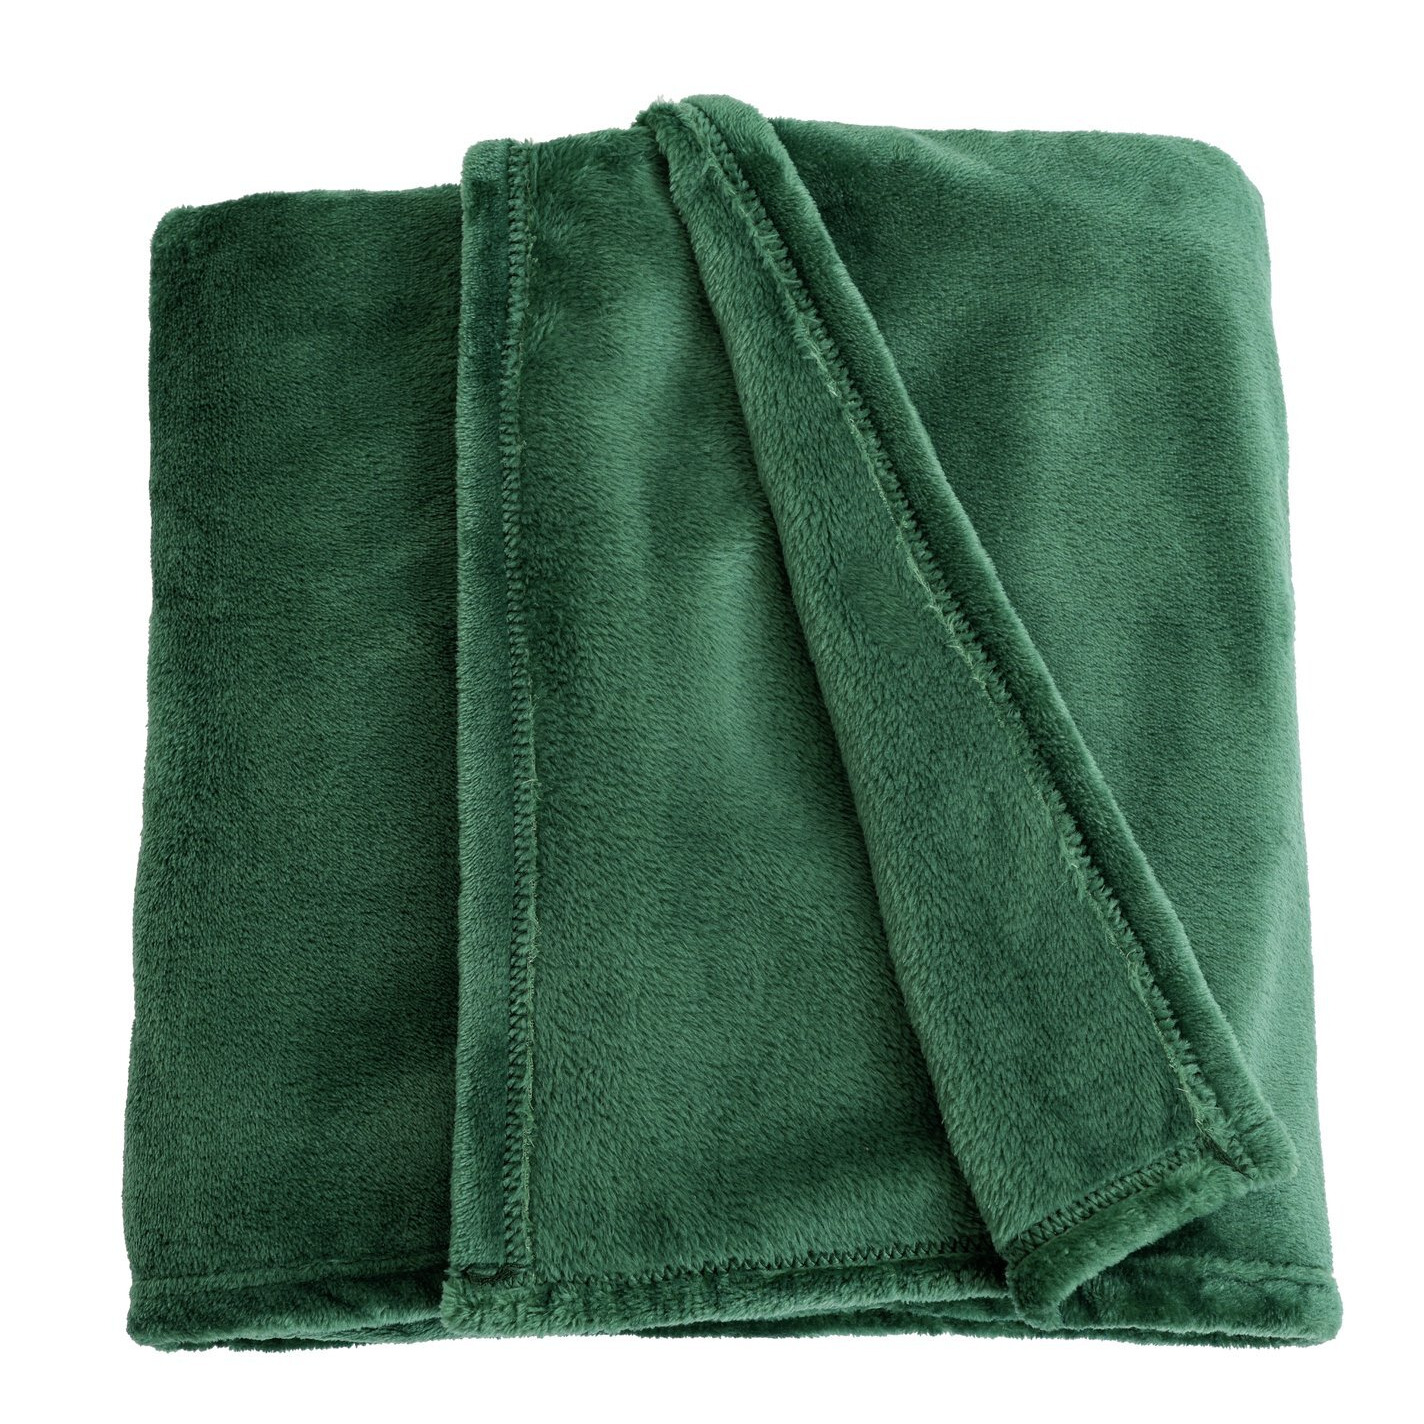 Argos Home Fleece Throw - Green - 125X150cm - image 1